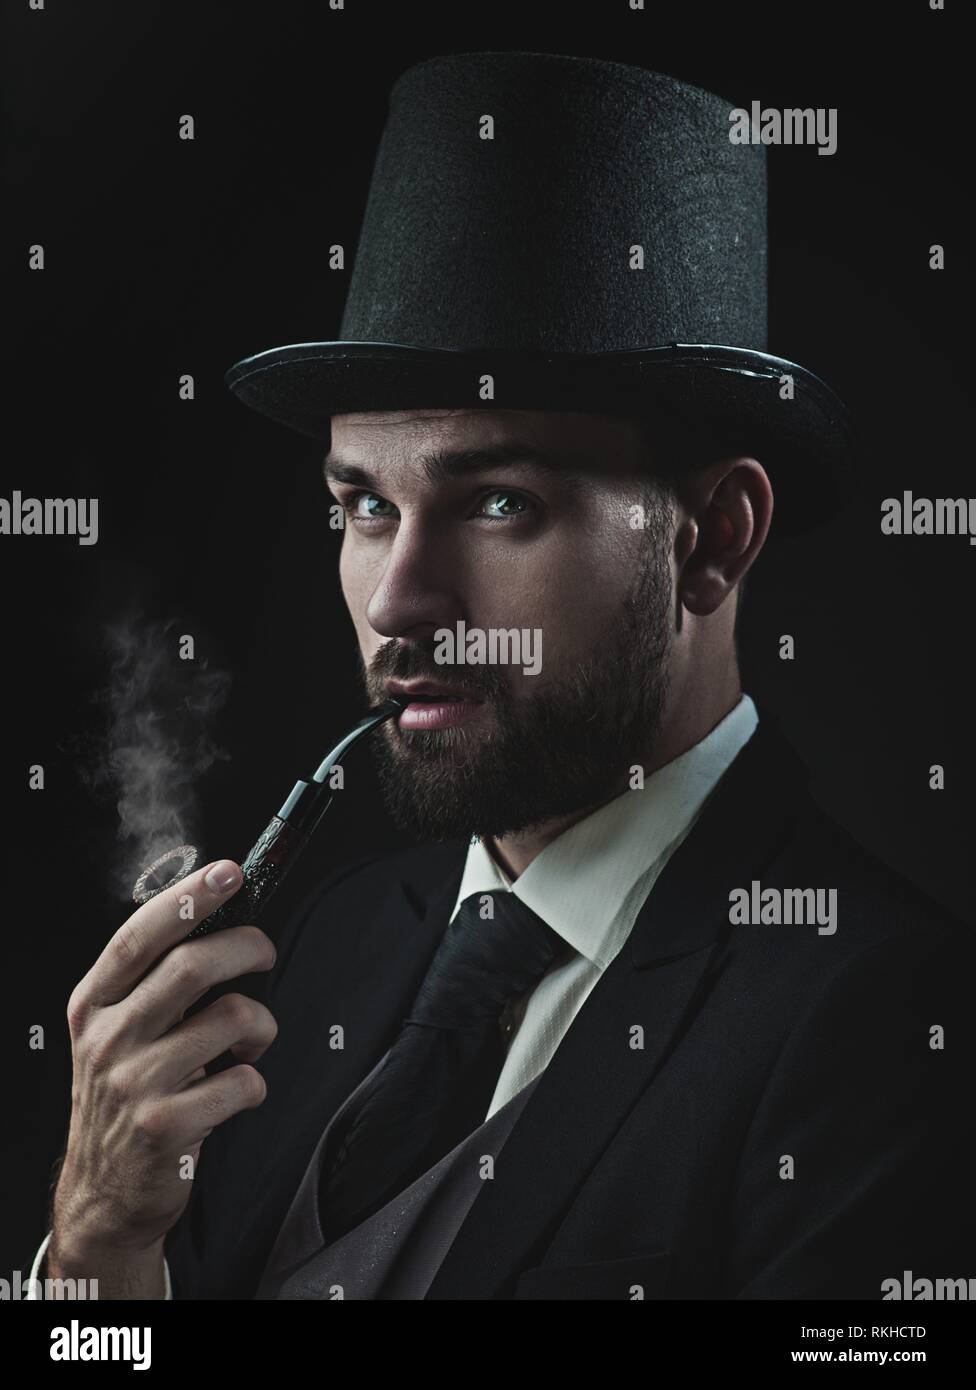 Englishman detective, retro style male portrait. Stock Photo